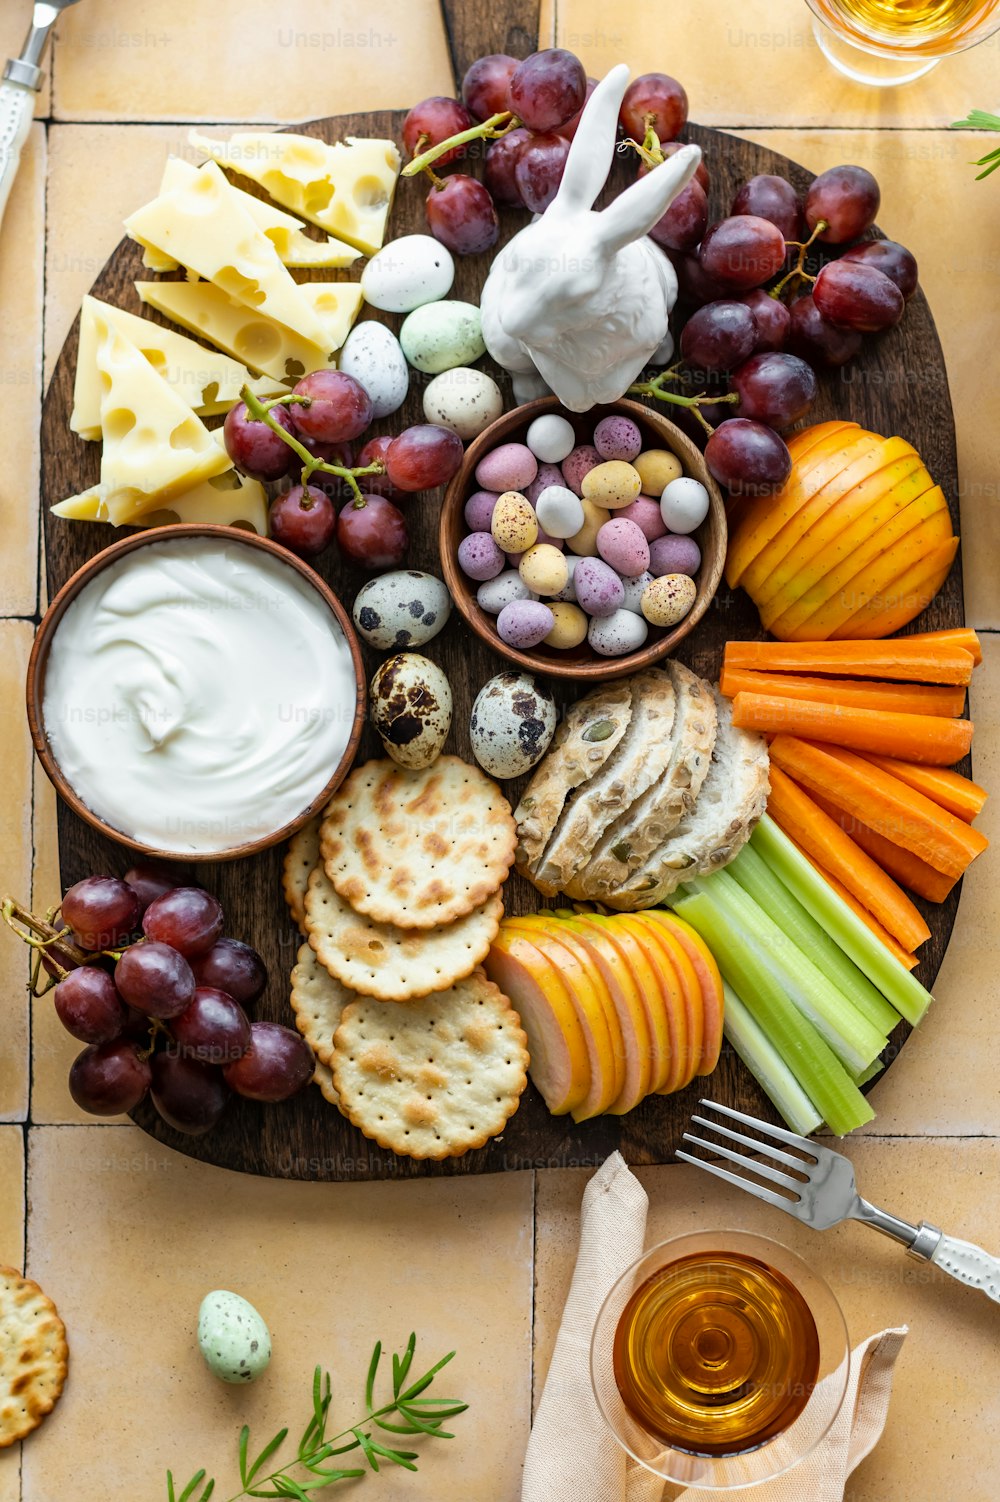 un plato de queso, galletas saladas, galletas, uvas, zanahorias